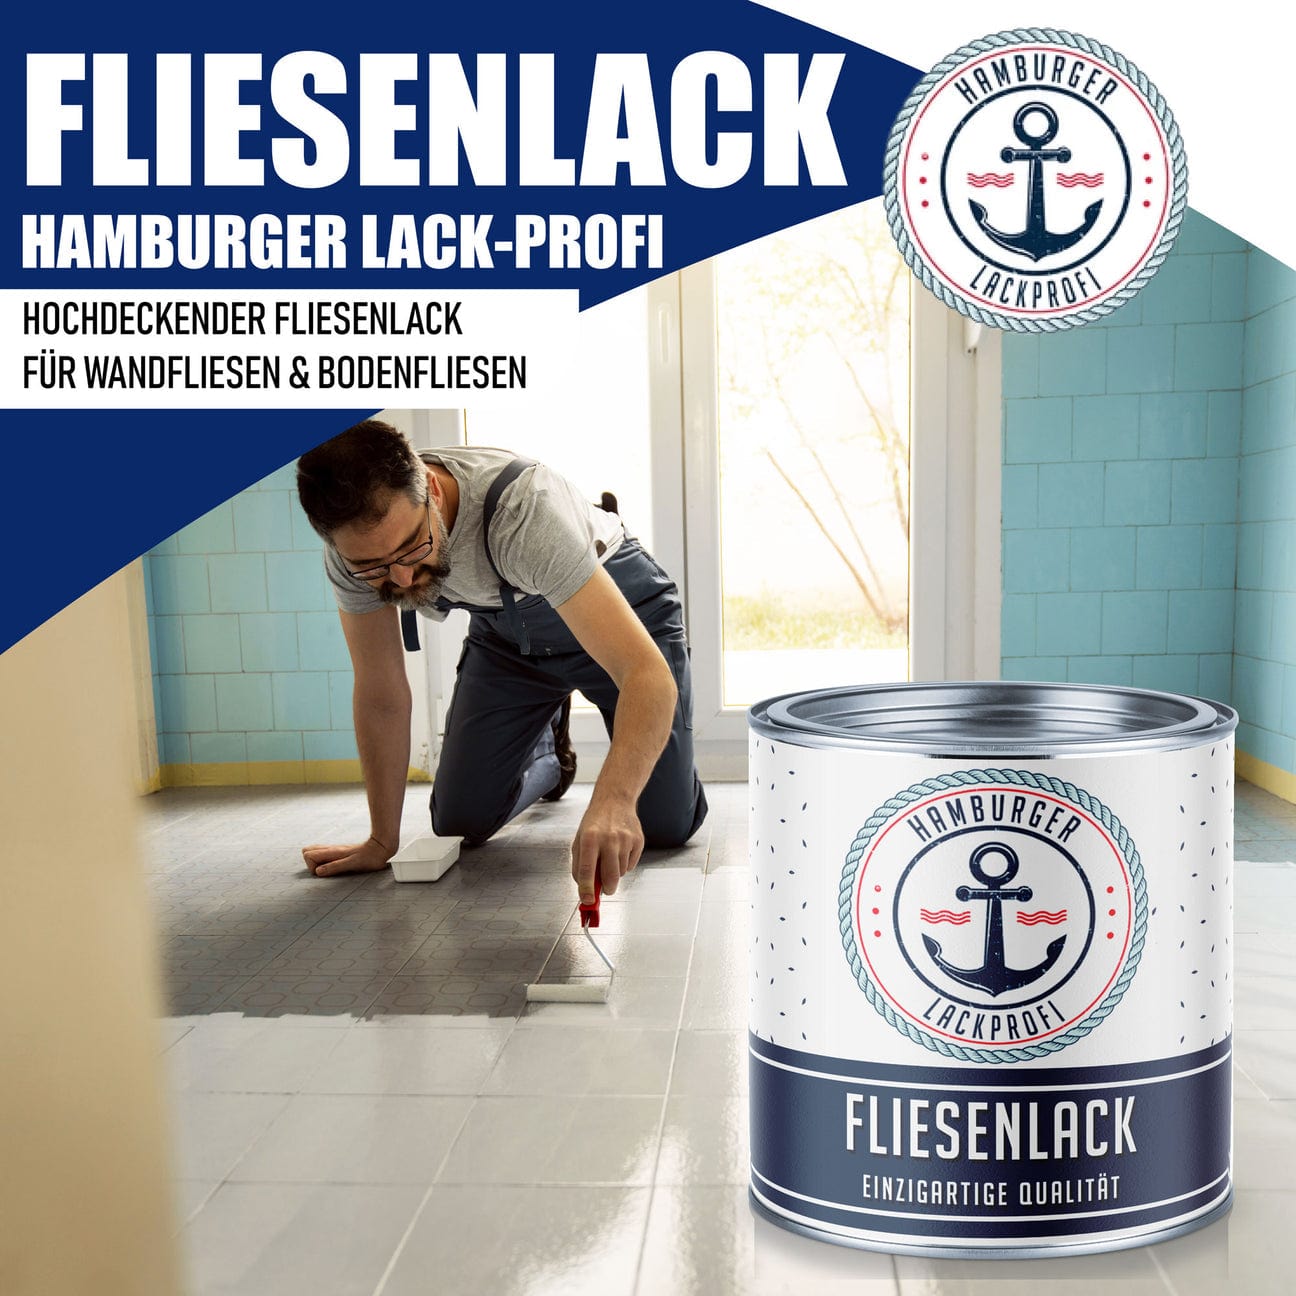 Hamburger Lack-Profi Hamburger Lack-Profi Fliesenlack Olivgrau RAL 7002- hochdeckende Fliesenfarbe Grau